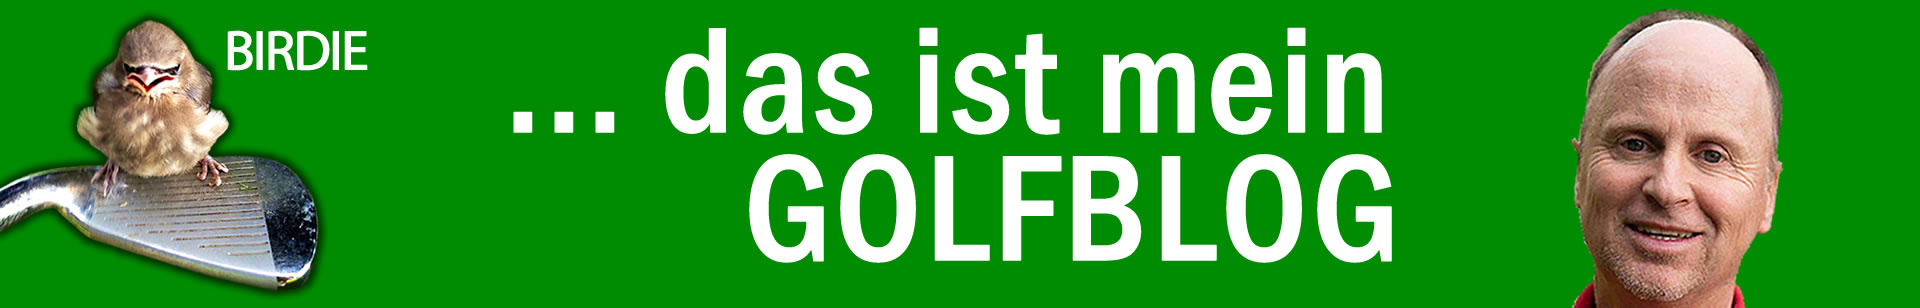 1Golfblog-Golfschule-Clubfitting-Golfreisen-Golfunterricht-Golfstunde-Golflehrer-Zurich-Thierry-Rombaldi-Golfschool-1